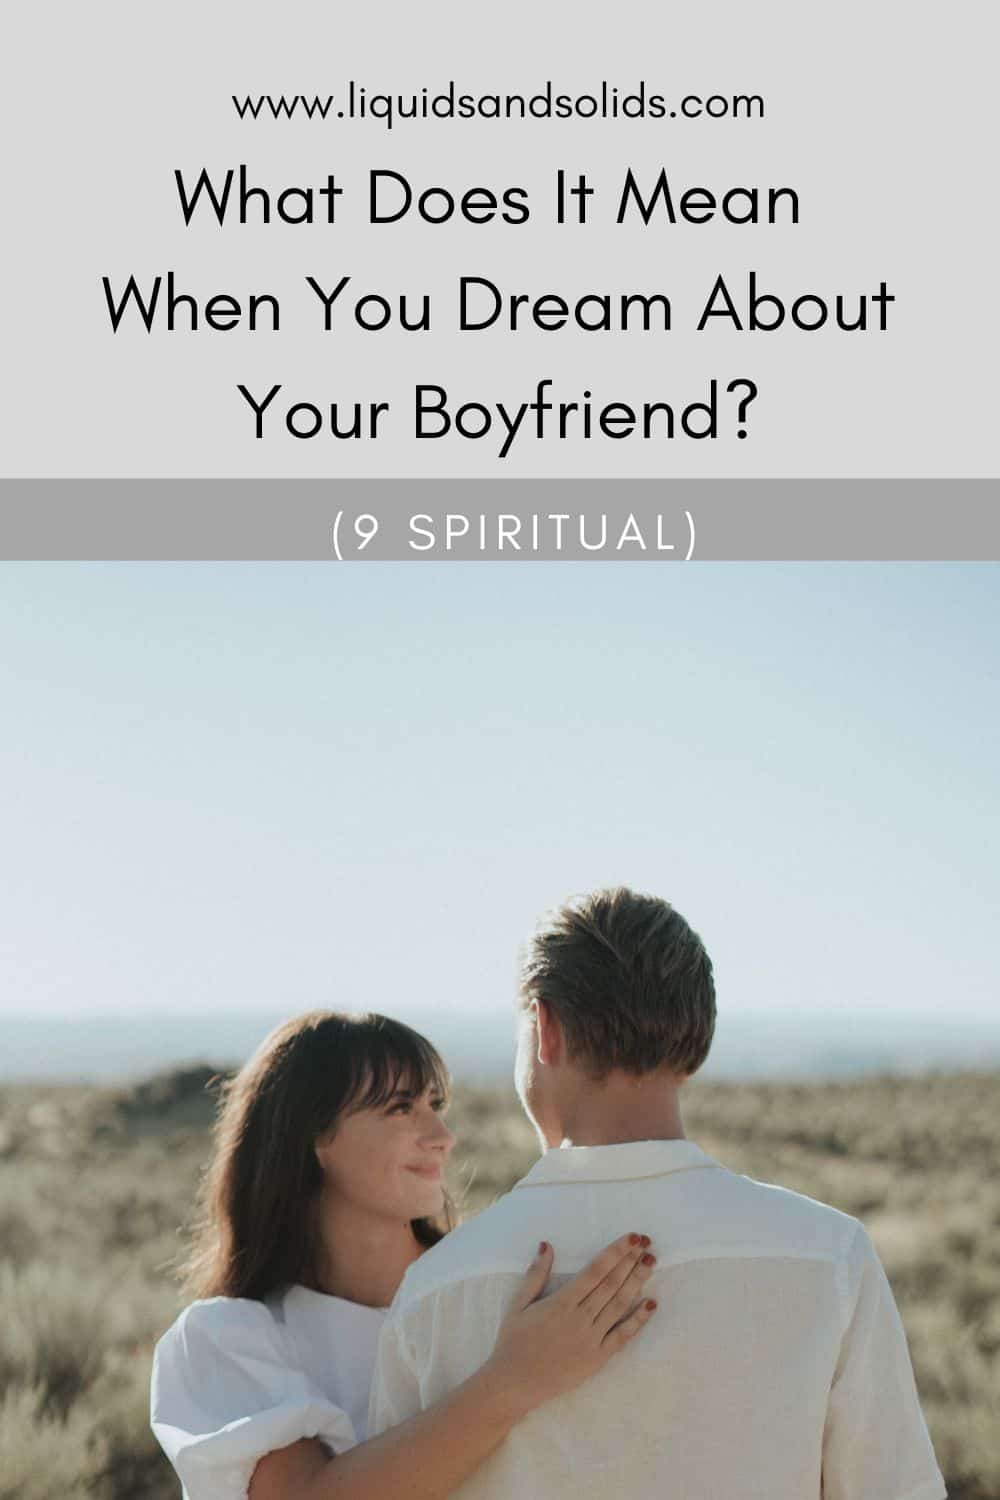  Mida tähendab see, kui sa unistad oma poiss-sõbrast? (9 vaimset tähendust)